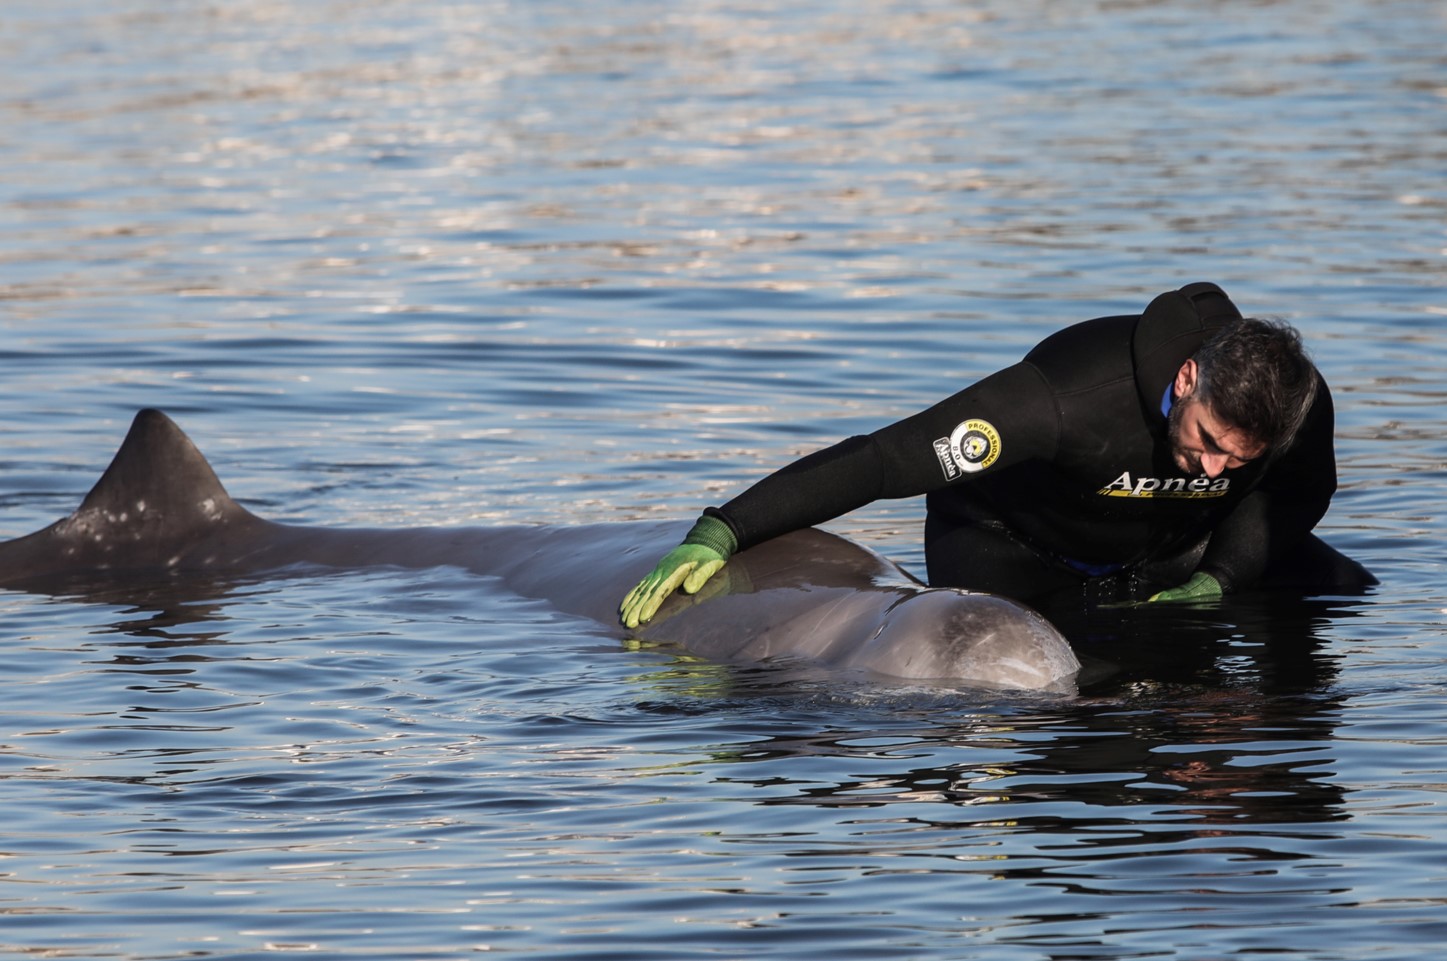 Φάλαινα στον Άλιμο: Μάχη για να σωθεί - Τι έδειξαν οι εξετάσεις | Ειδησεις | Pagenews.gr